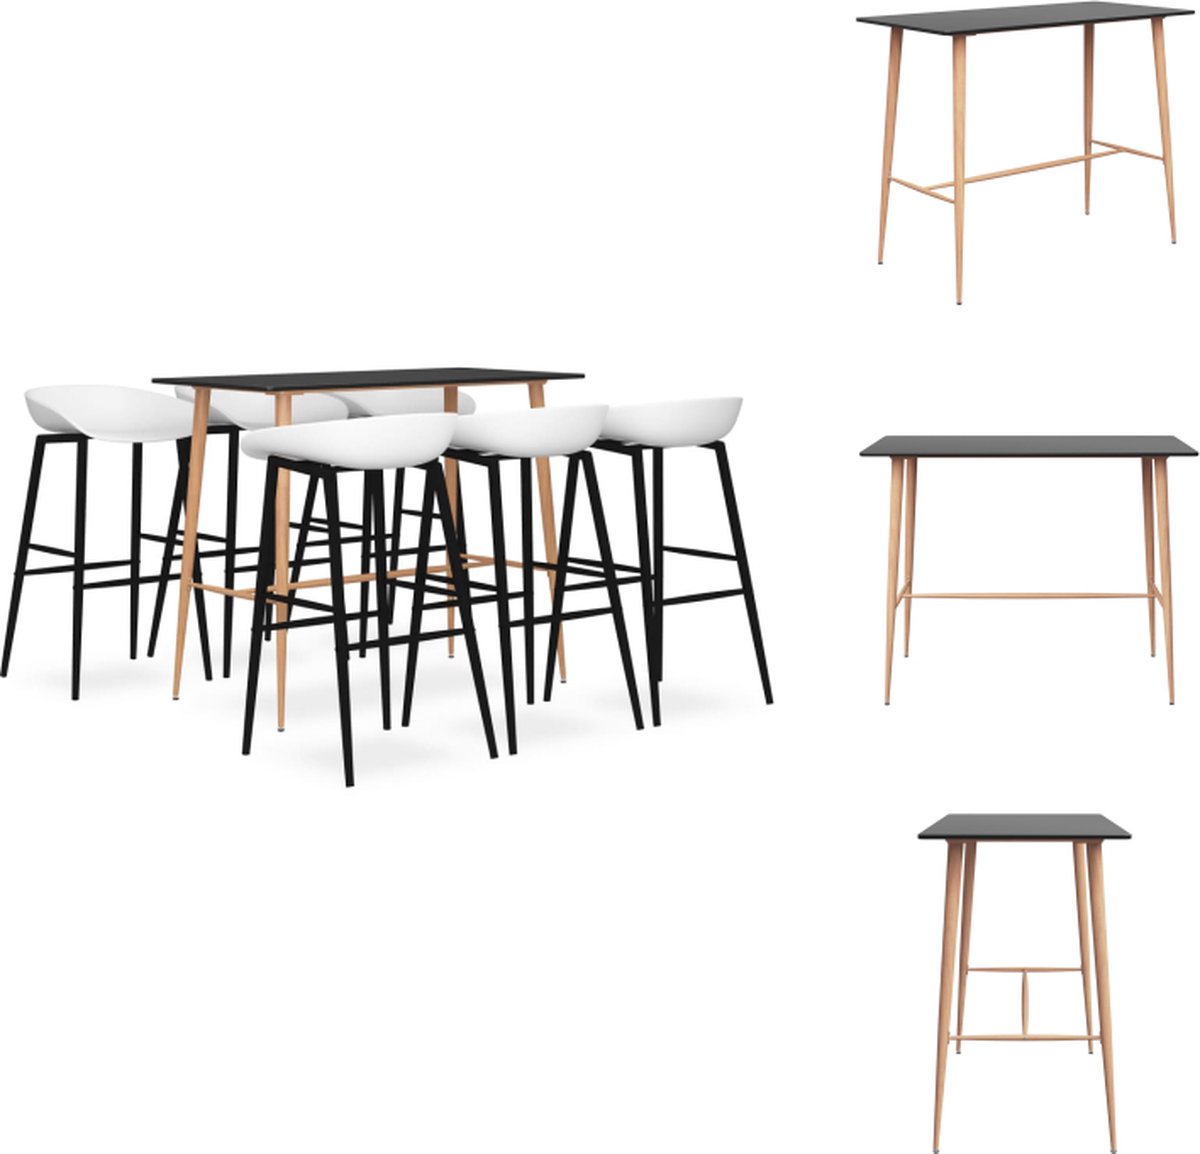 VidaXL Bartafel Zwart MDF en metaal 120x60x105 cm Barkruk Wit PP en metaal 48x47.5x95.5 cm Set tafel en stoelen